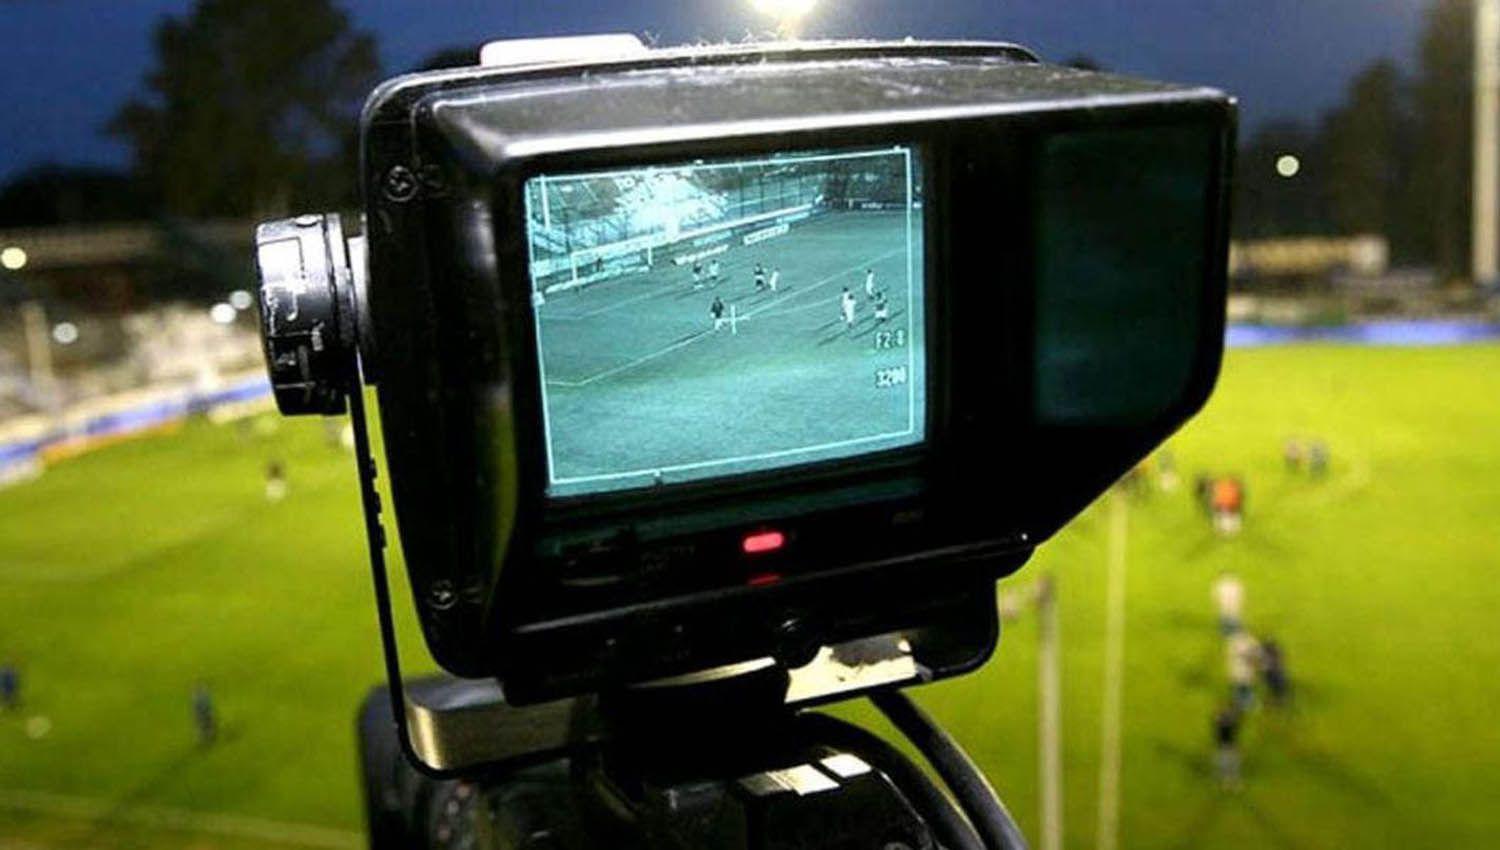 Fuacutetbol gratis- la TV Puacuteblica transmitiraacute dos partidos por fecha